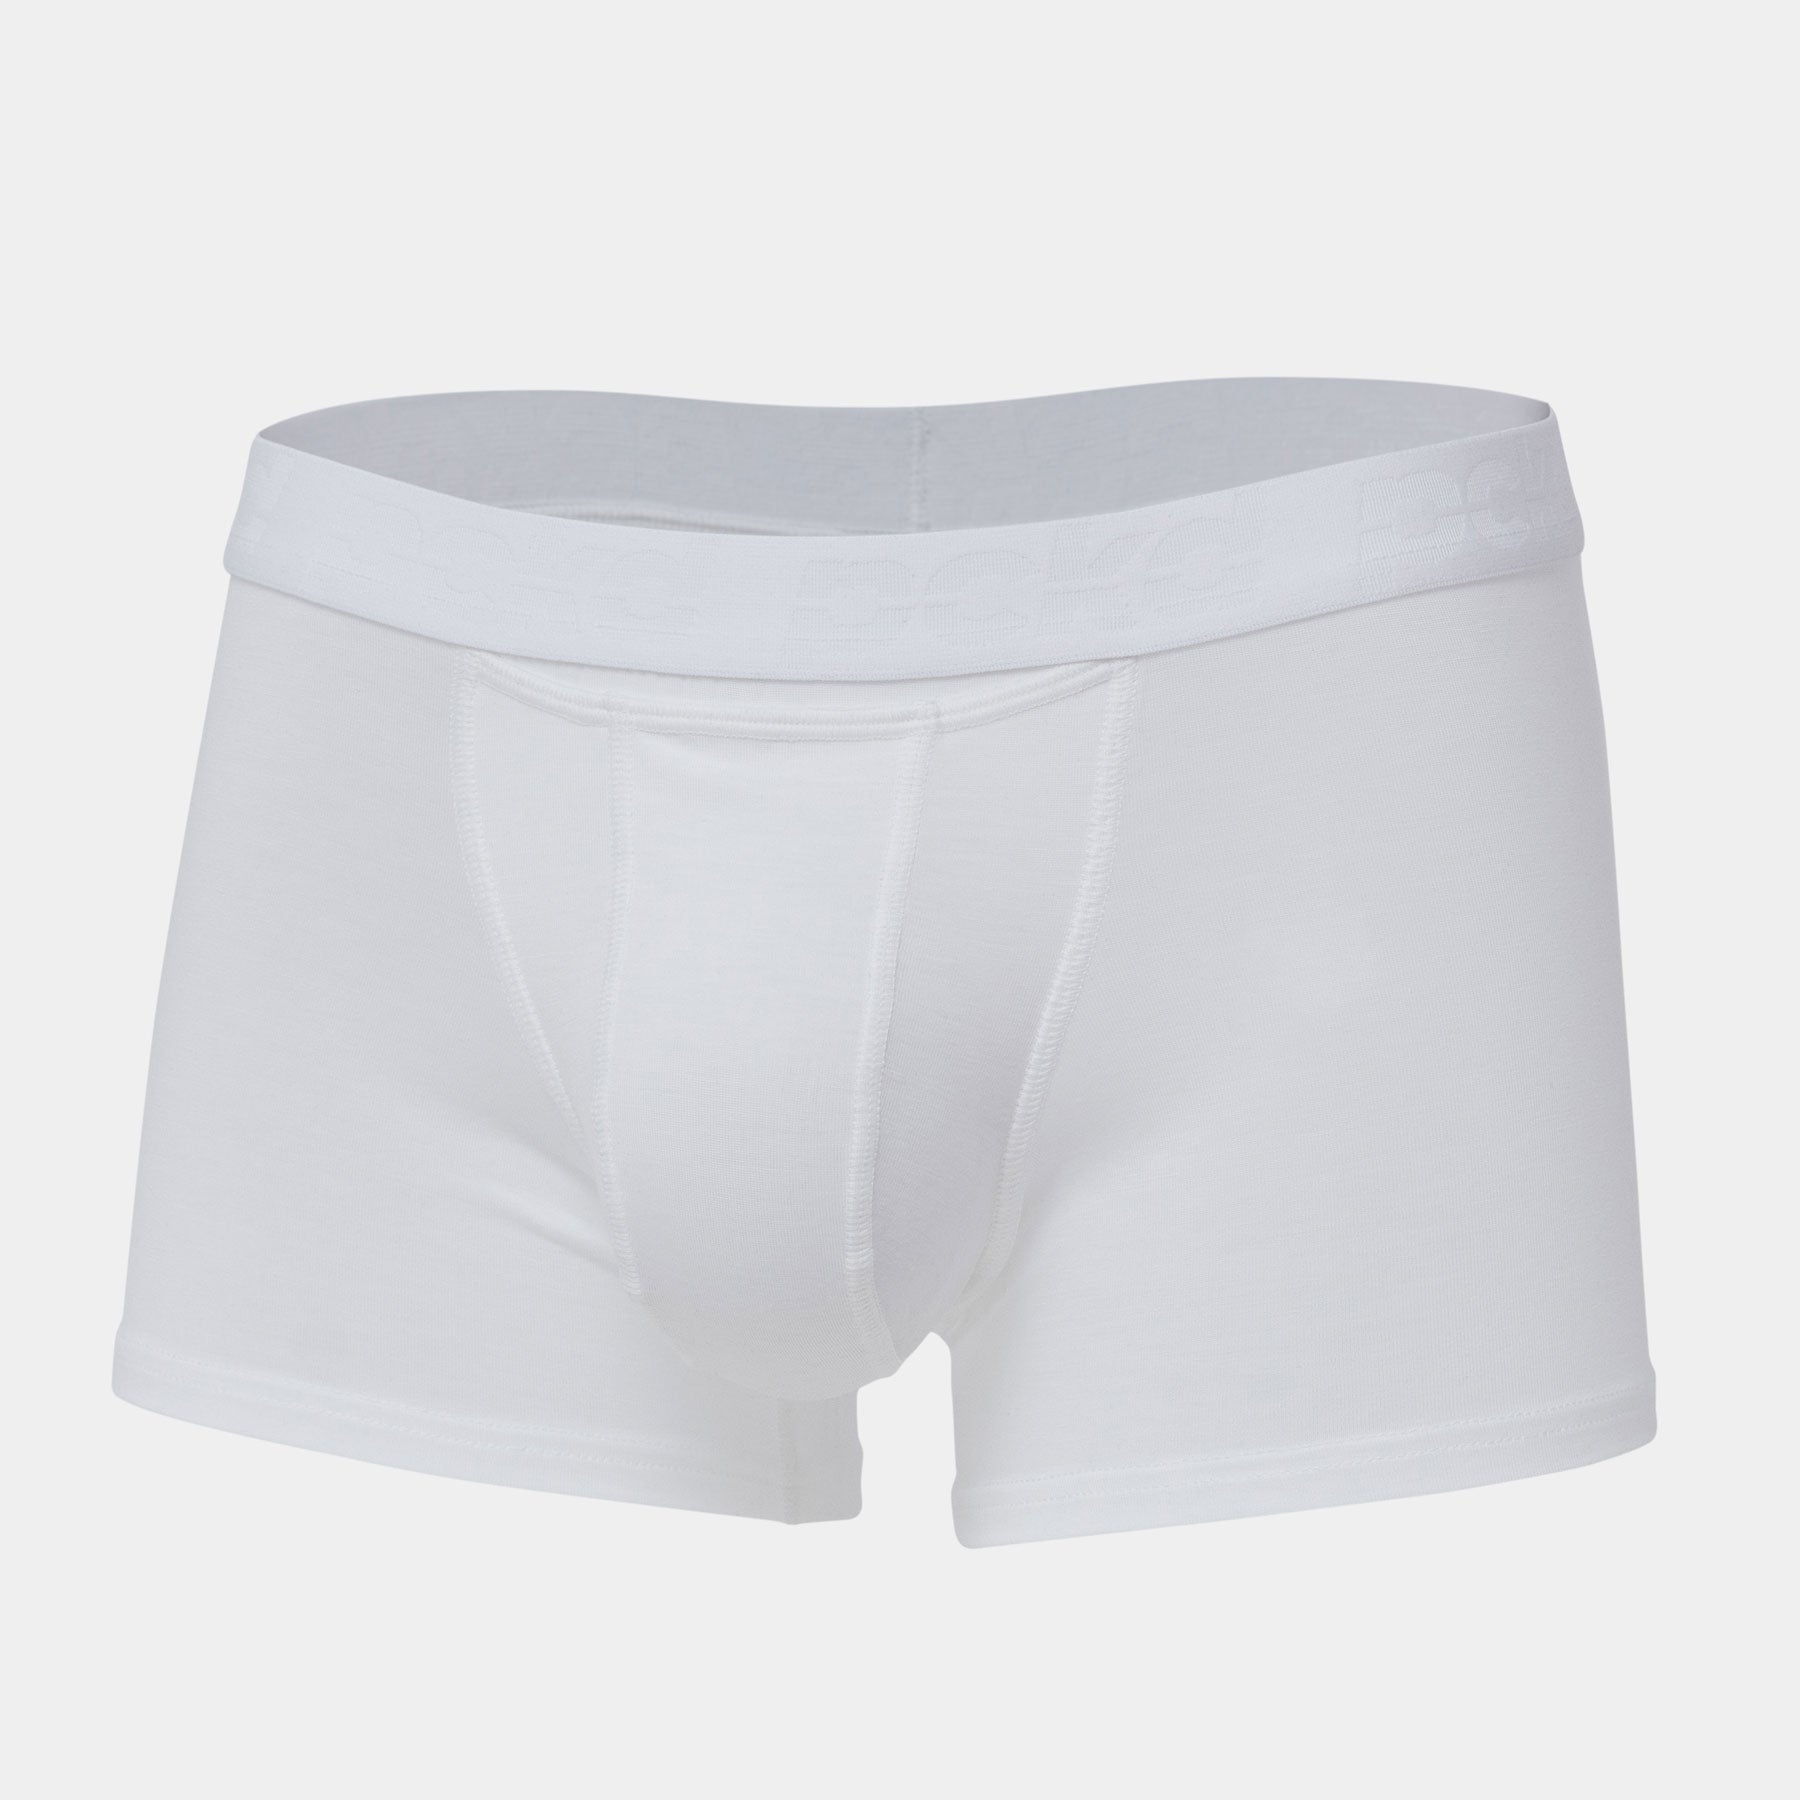 lange pckd | Underwear) Lyocell Schwarze Boxershorts Innovative pckd.de Farben - eng - aus anliegende (Boxer mehreren Beutelunterhosen done (Pouch Briefs) in underwear –